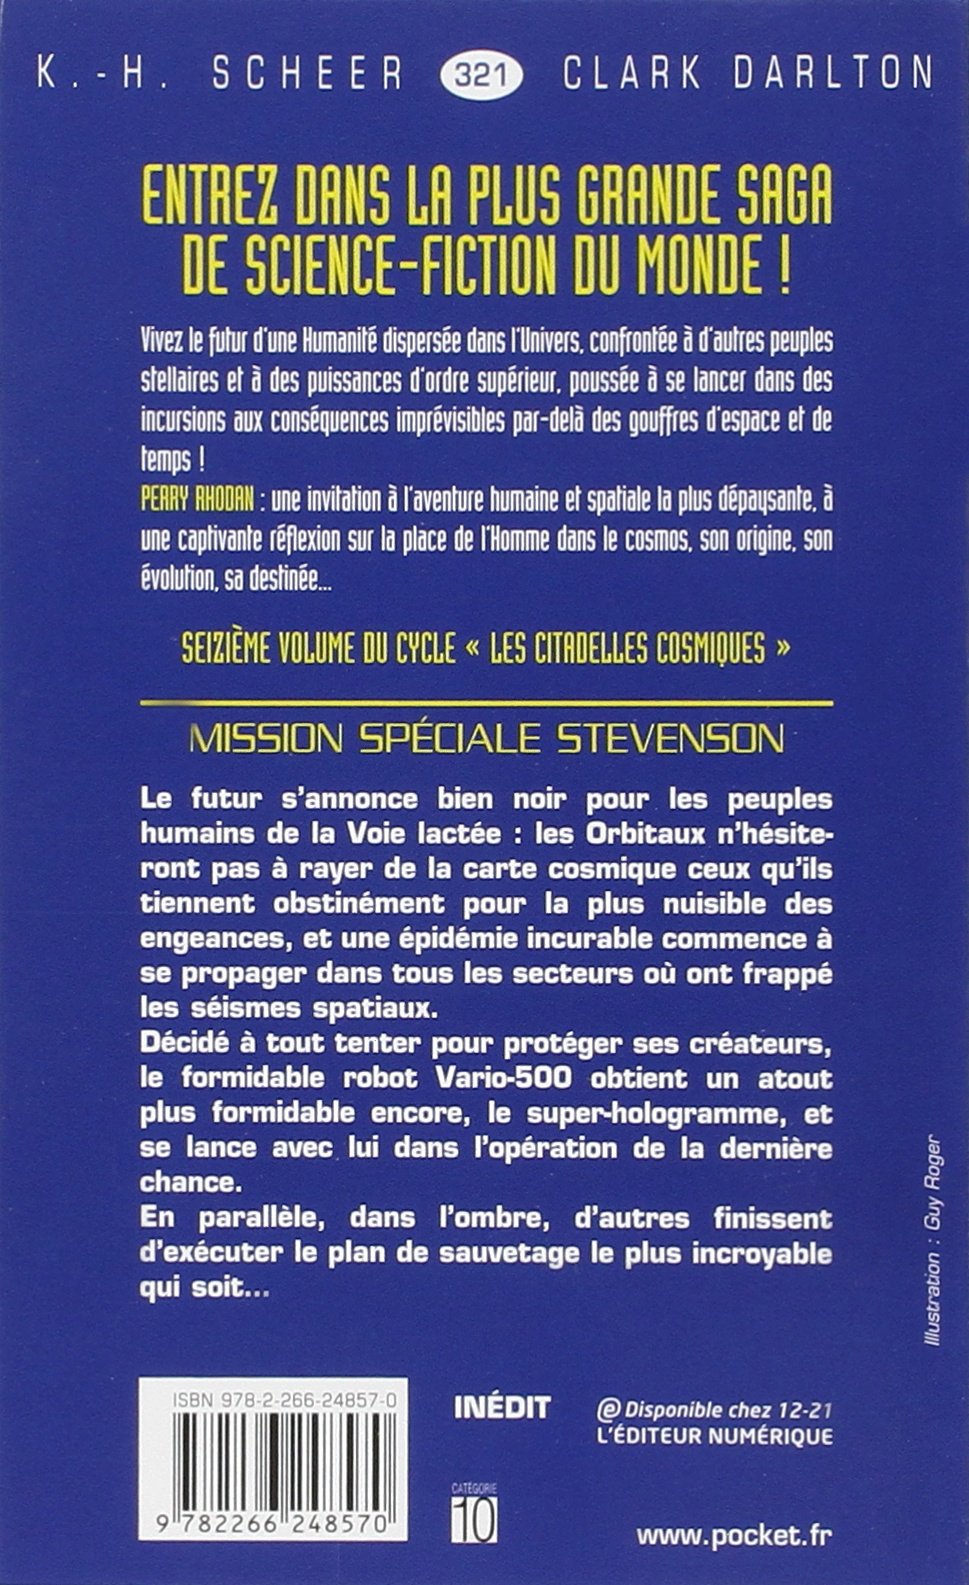 Perry Rhodan # 321 : Mission spéciale Stevenson (Karl-Herbert Scheer)